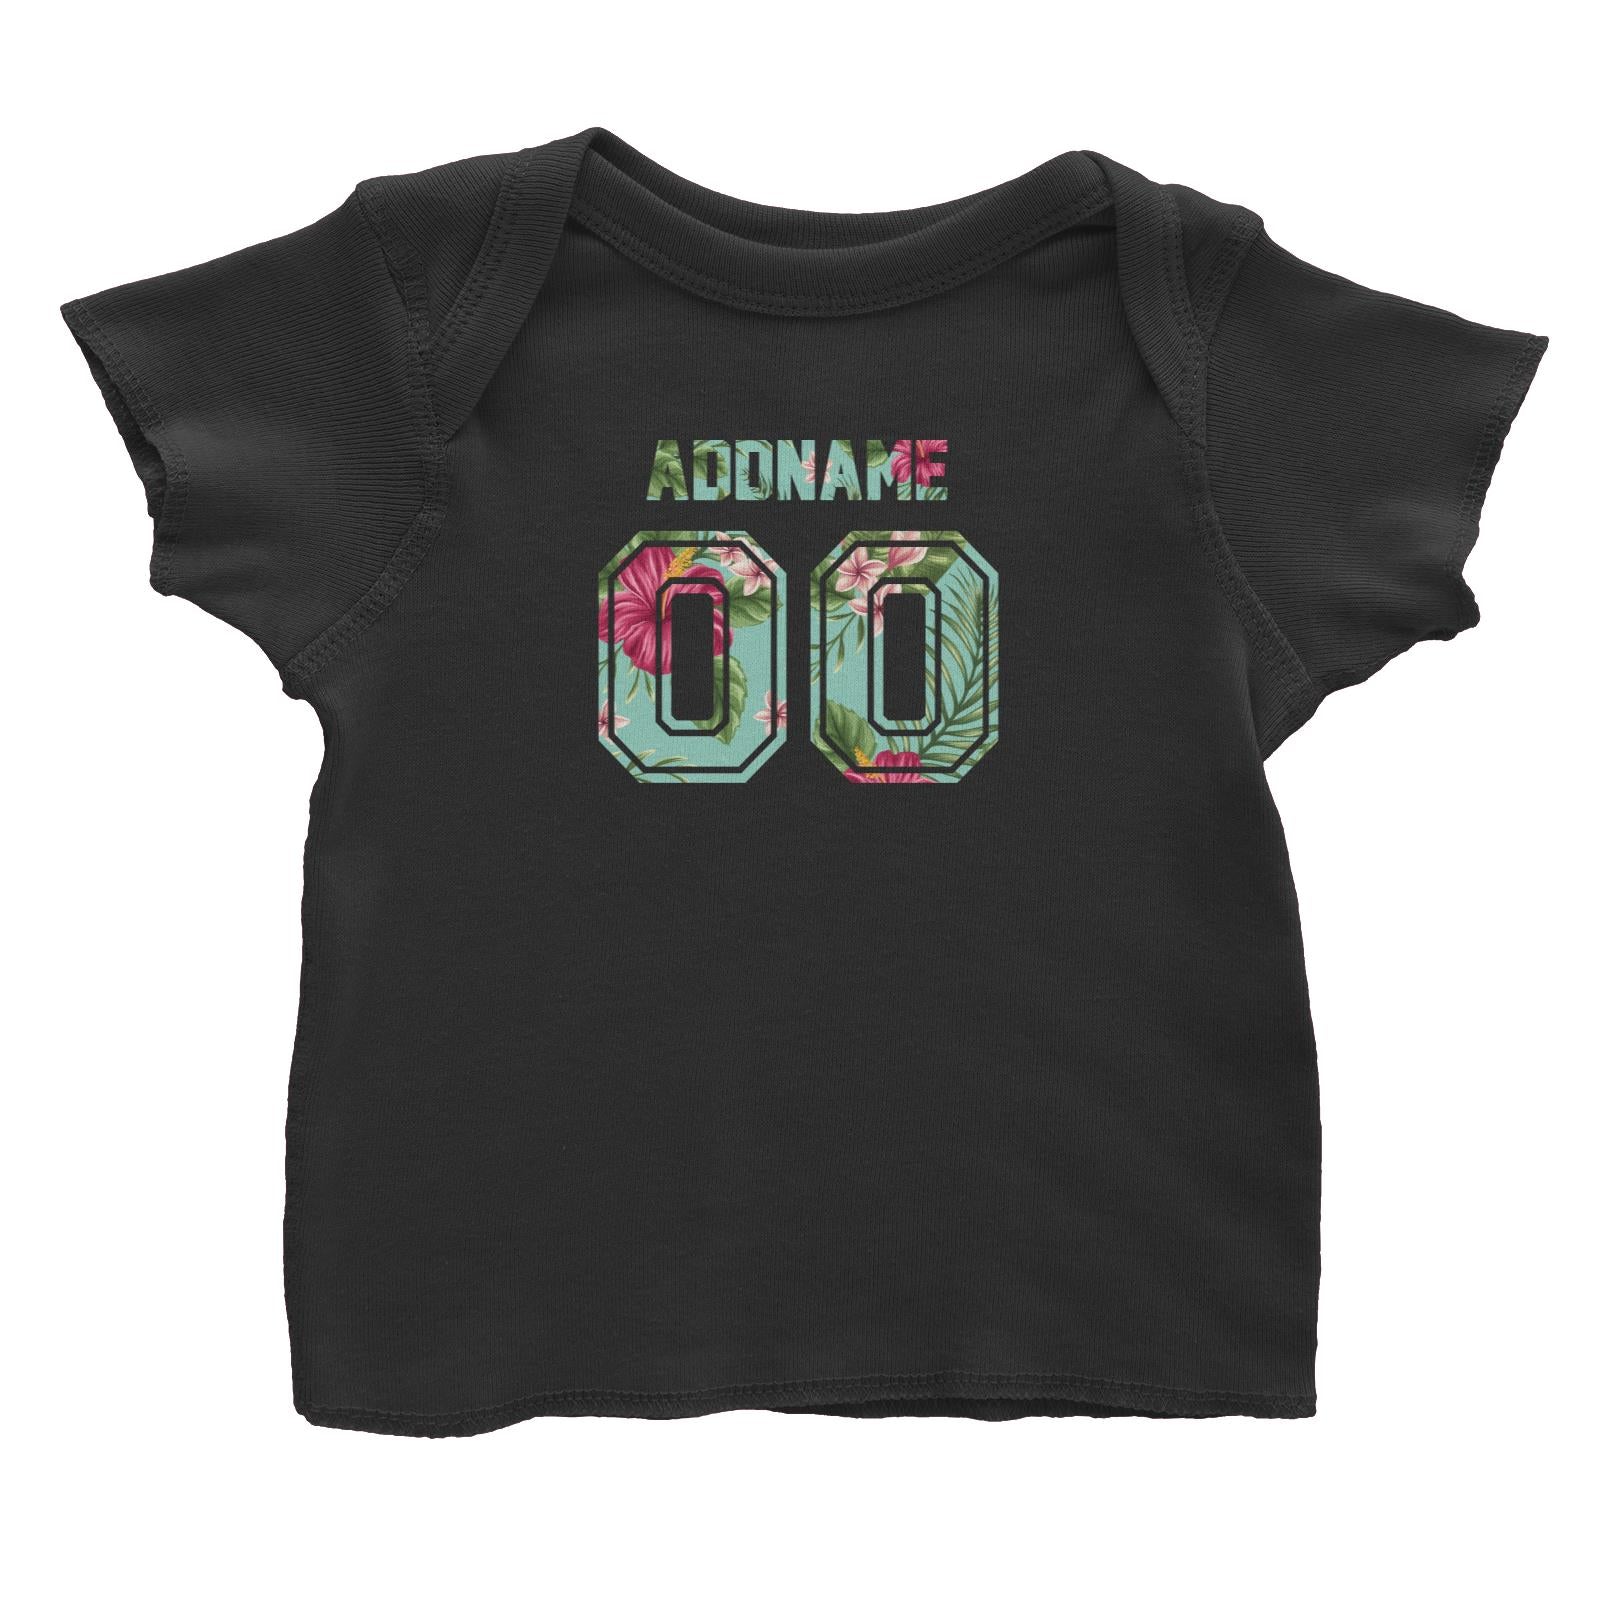 Jersey Bunga Raya Baby T-Shirt  Personalizable Designs